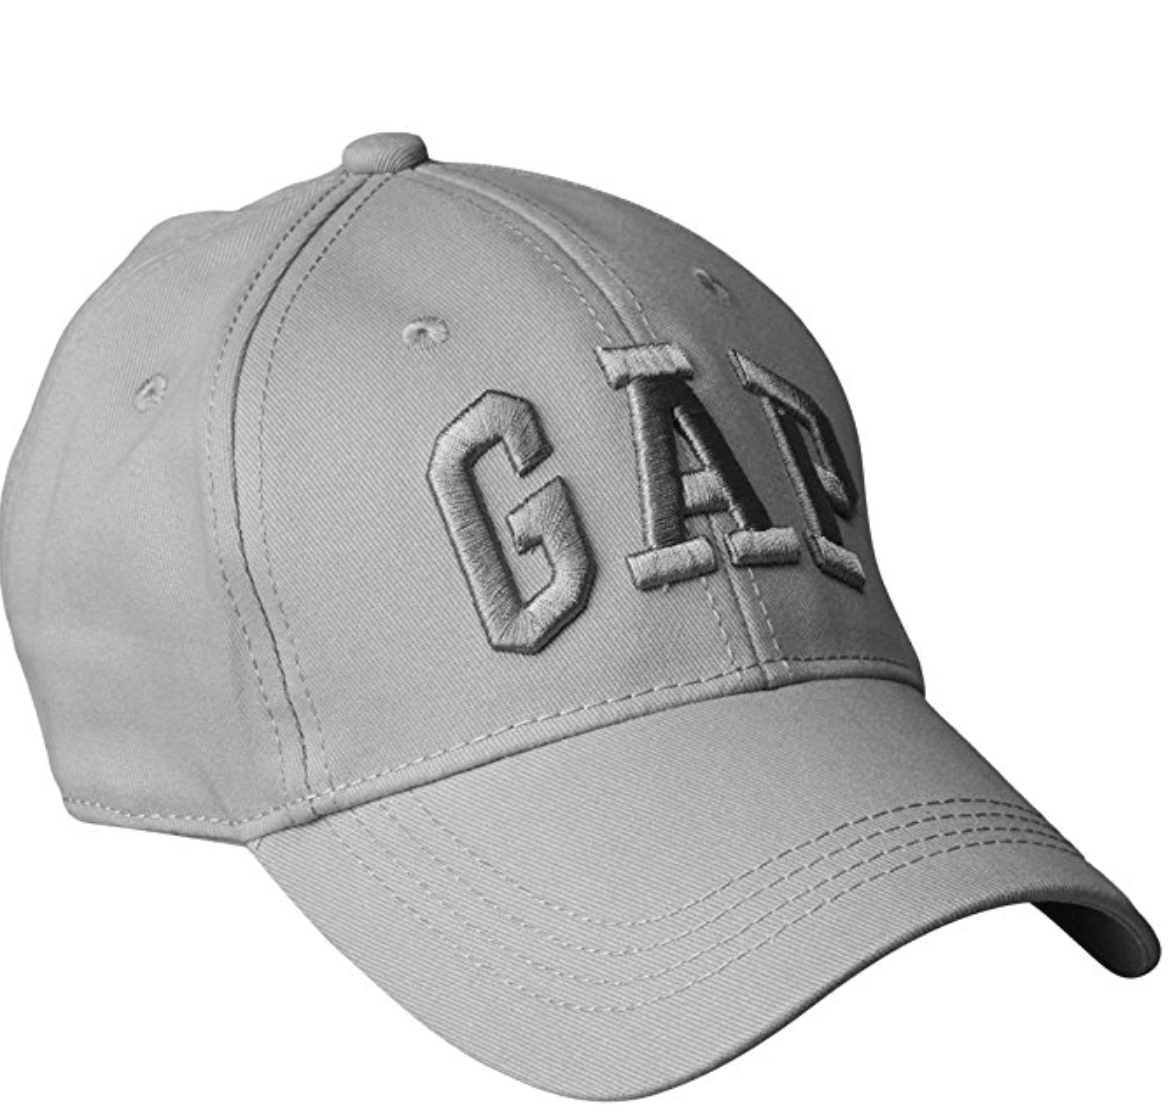 GAP Men's Baseball Cap